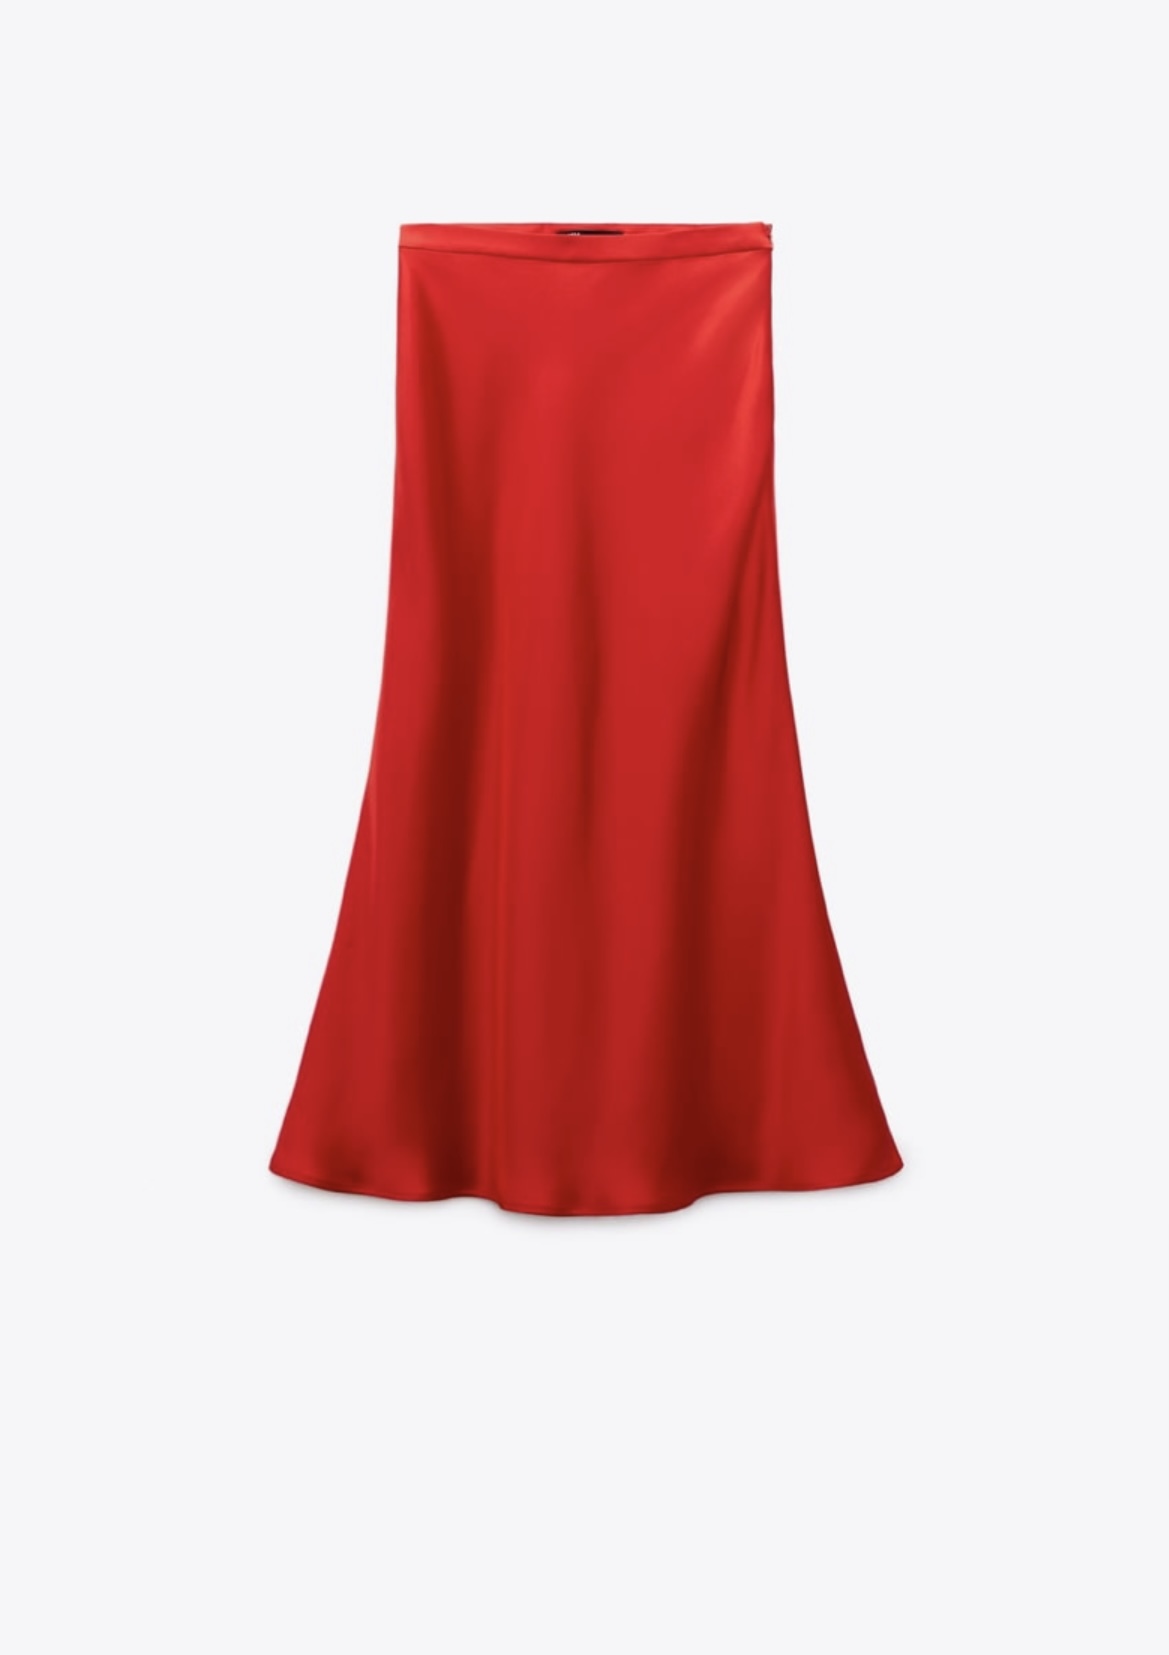 Falda de satén en color rojo de Zara (25,95 euros).